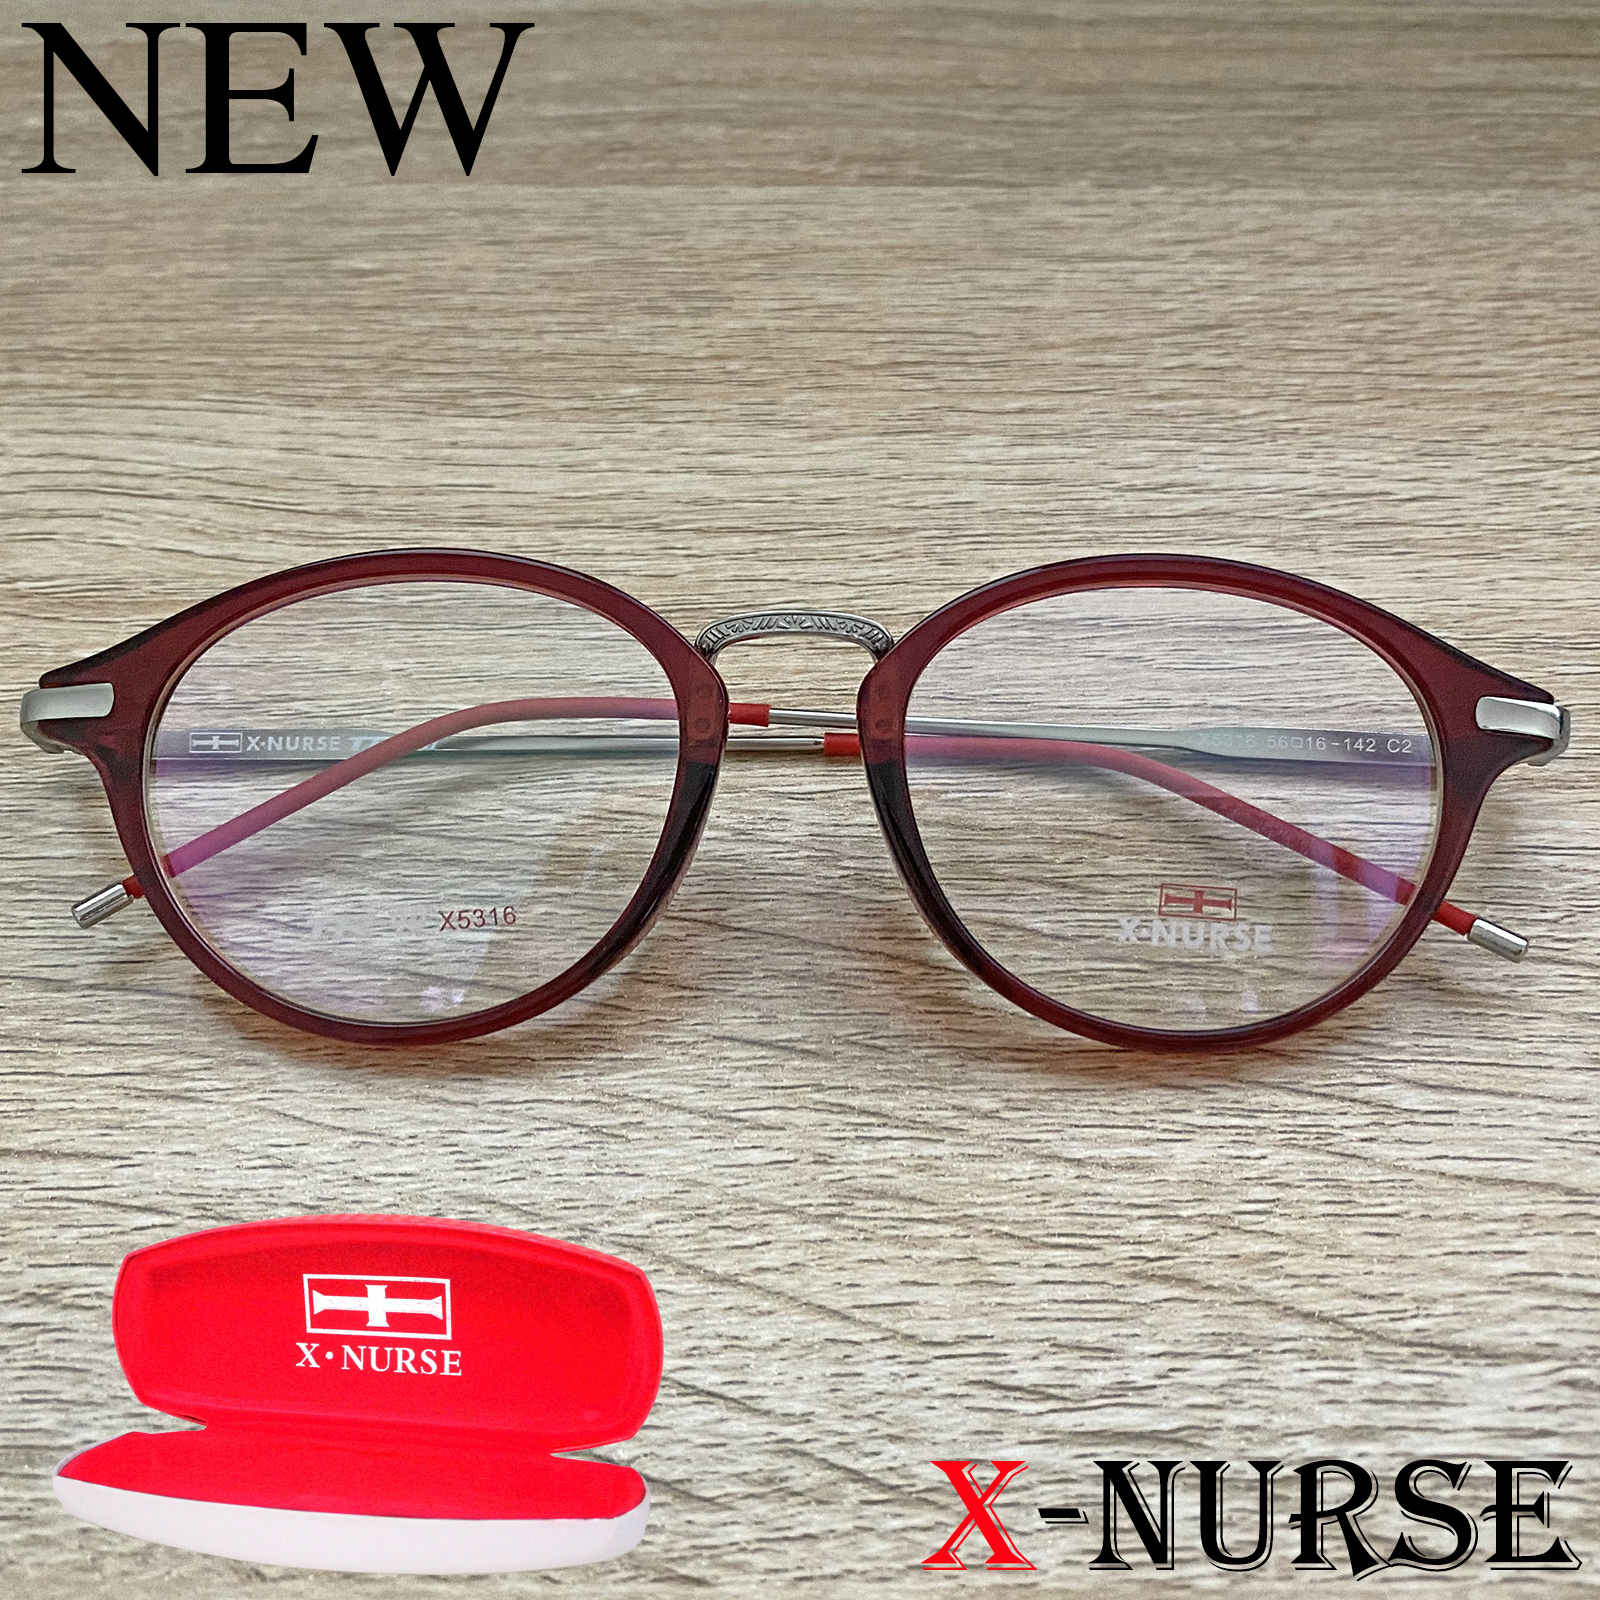 กรอบแว่นตา แว่นตาสำหรับตัดเลนส์ ผู้ชาย ผู้หญิง Fashion รุ่น X-NURSE 5316 สีแดง ทรงรี ขาข้อต่อ วัสดุ พลาสติก พีซี เกรด เอ รับตัดเลนส์สายตาเลนส์กันแดดทุกชนิด